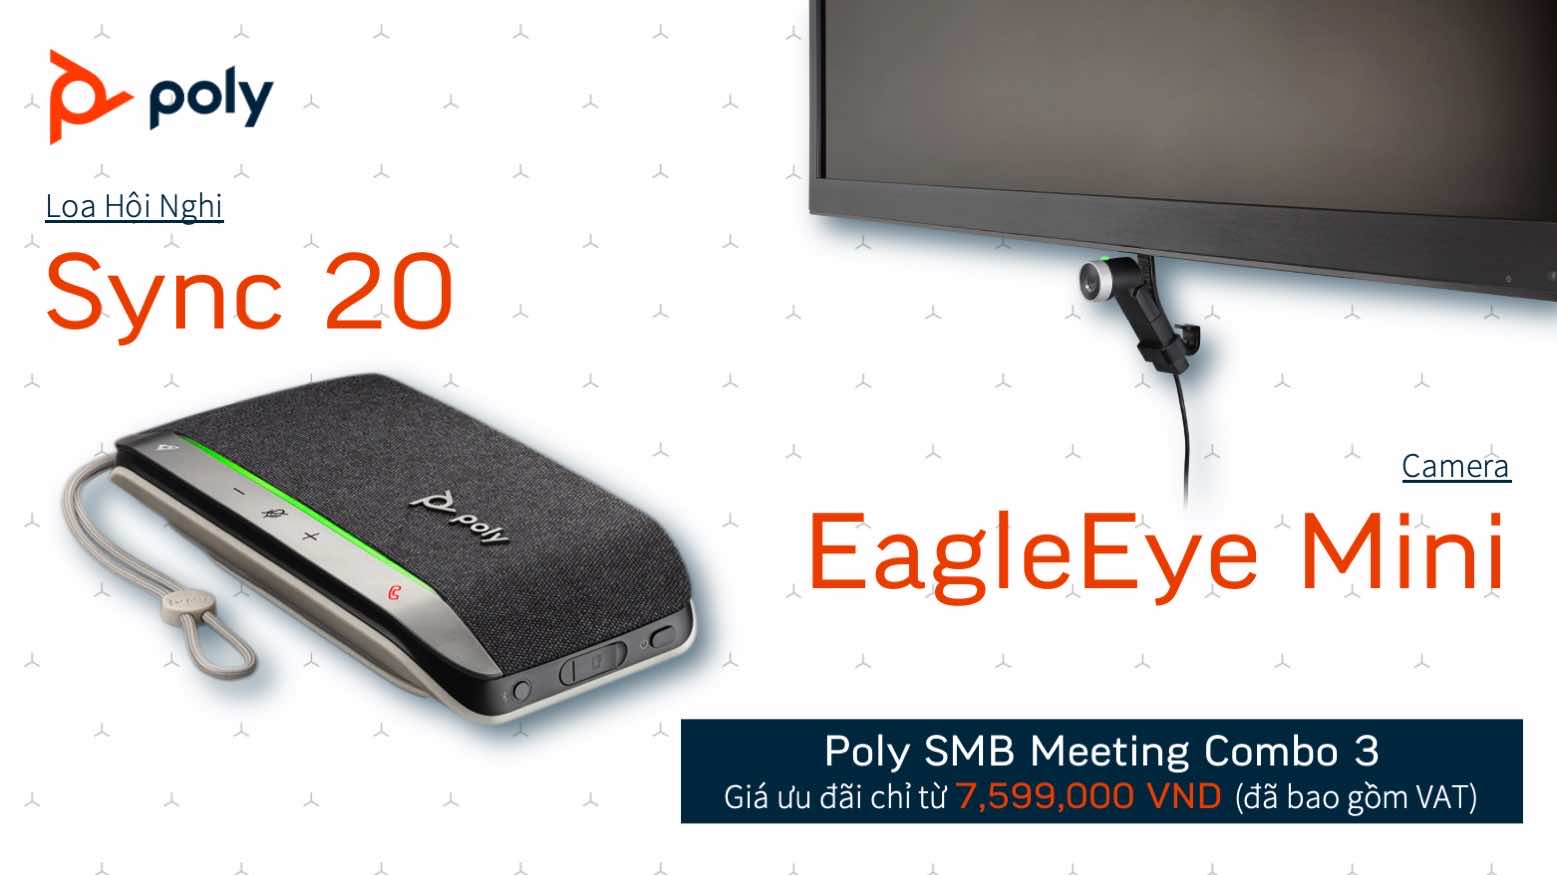 Gói giải pháp họp trực tuyến Poly Sync 20 và Camera EagleEye Mini